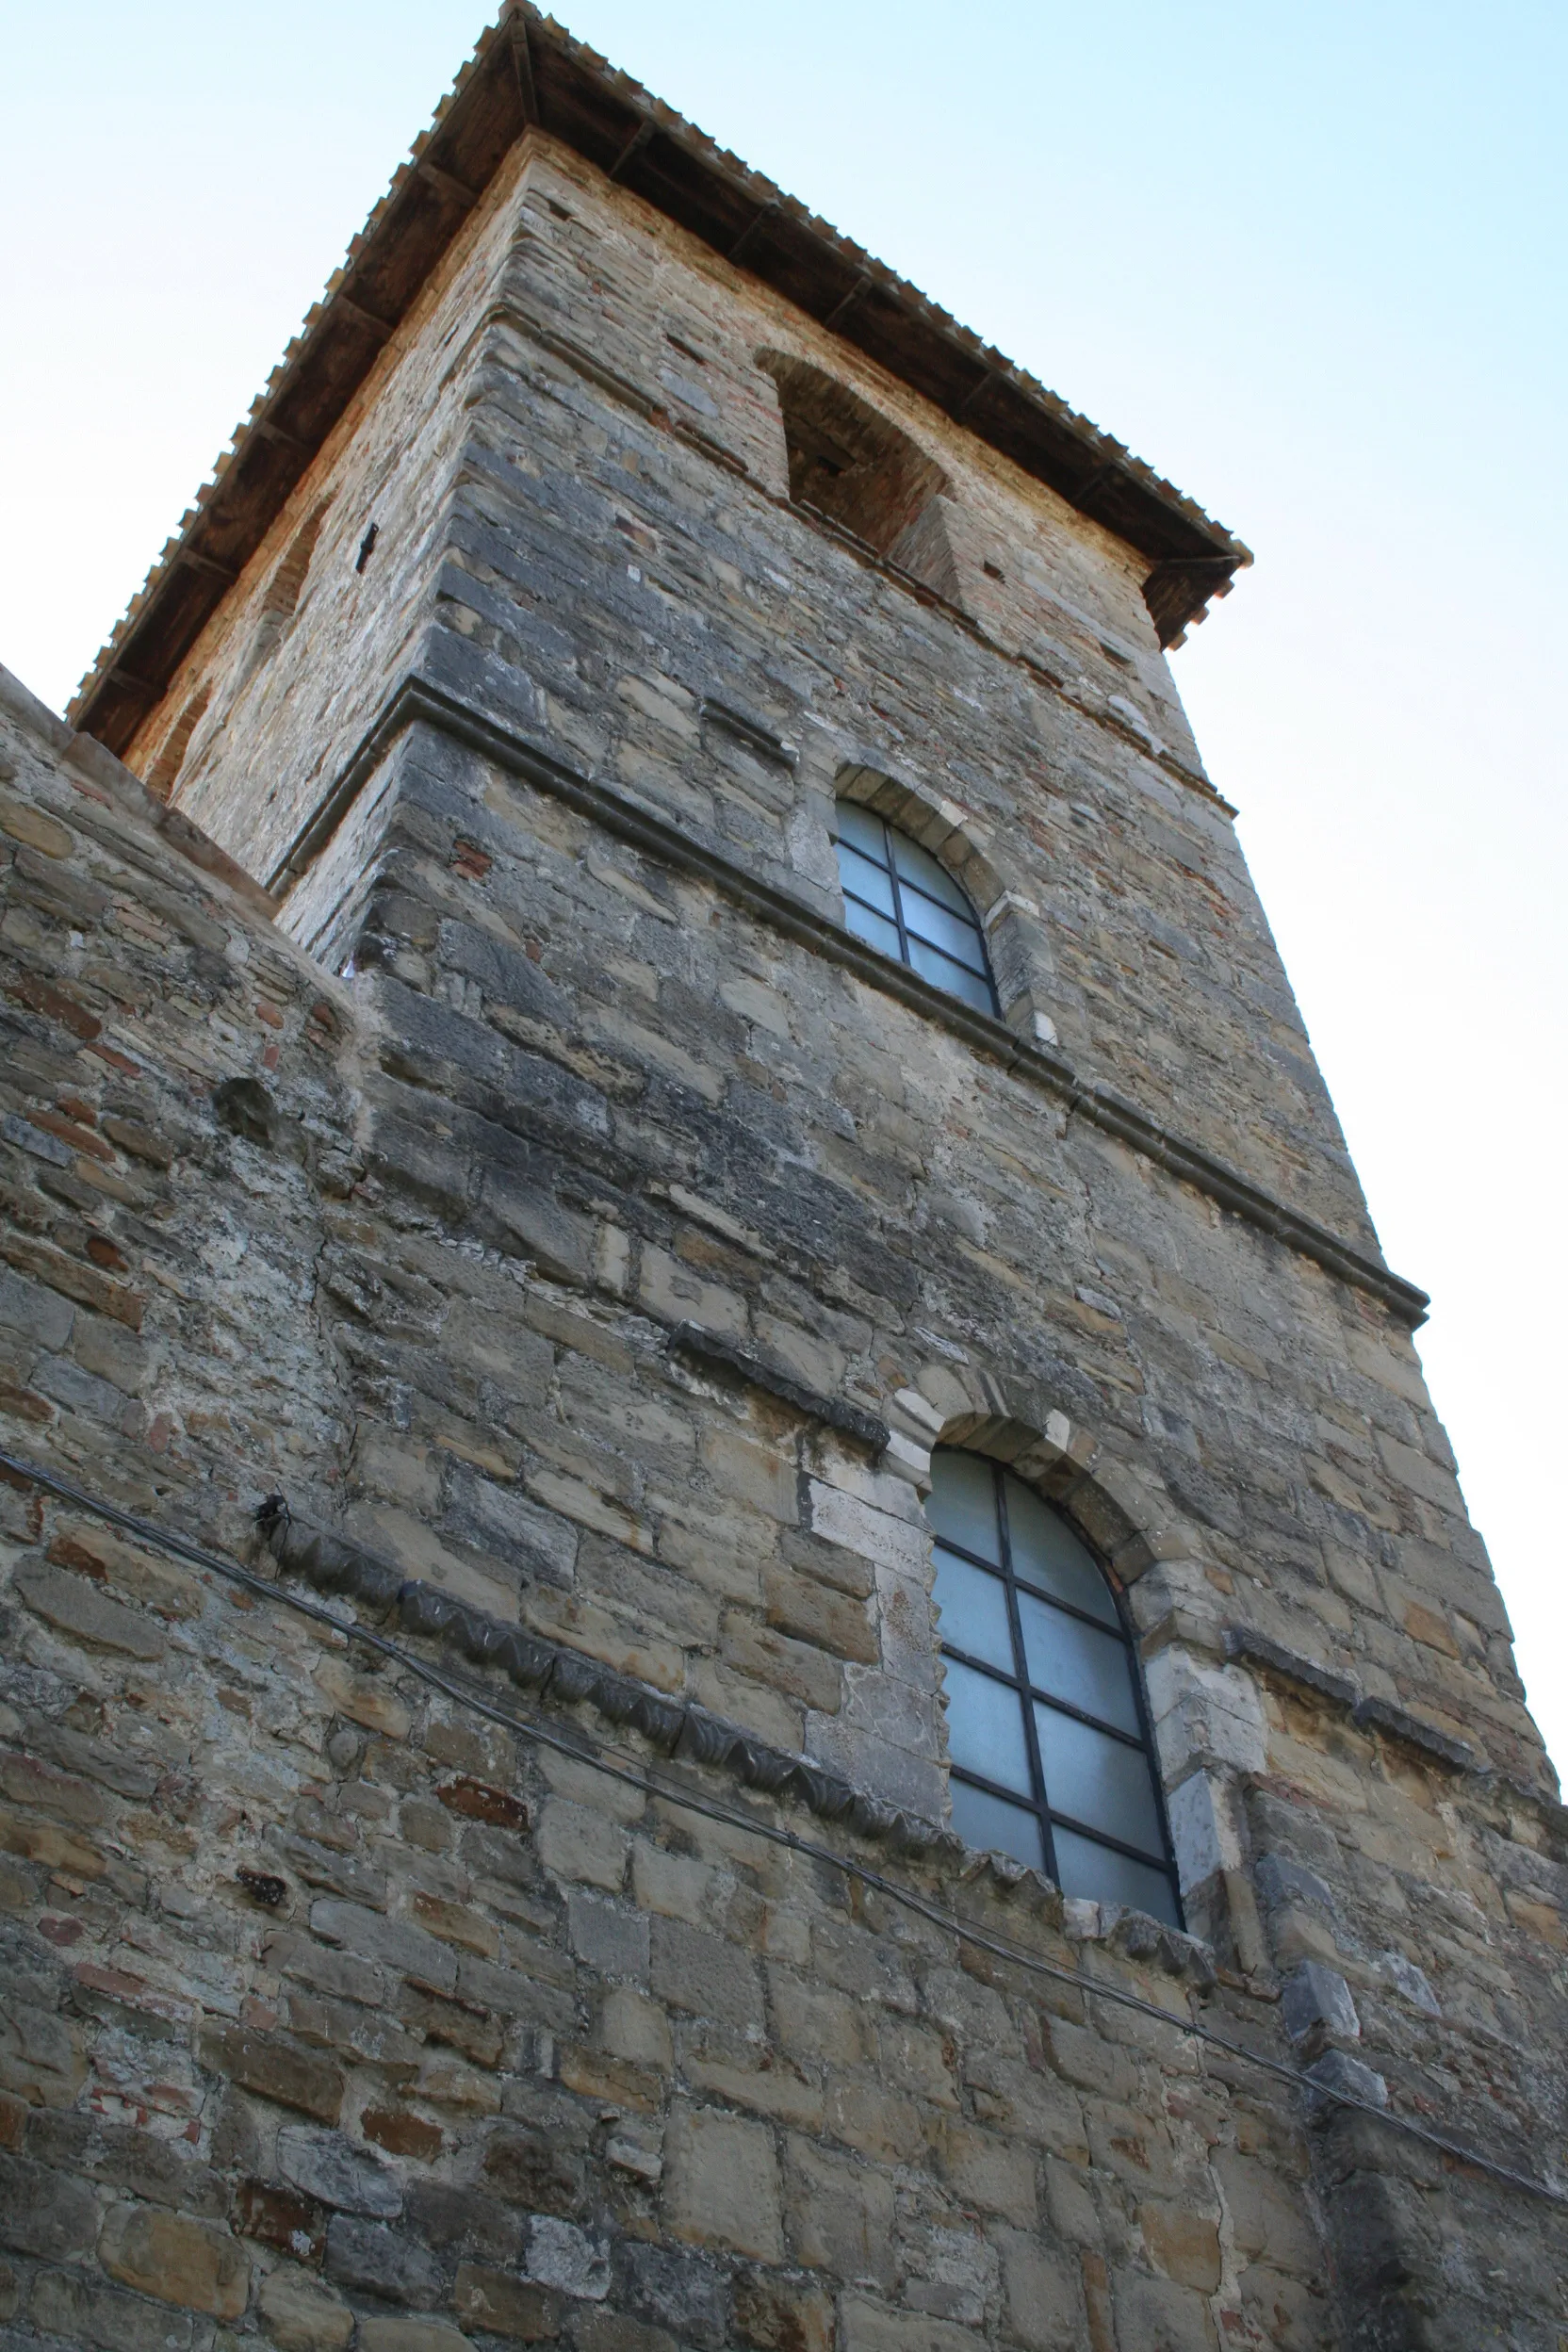 Photo showing: Chiesa di San Salvatore di Canzano, torre campanaria dell'edificio religioso appartenente al complesso abbaziale omonimo nel paese di Canzano in provincia di Teramo, Abruzzo, Italia.